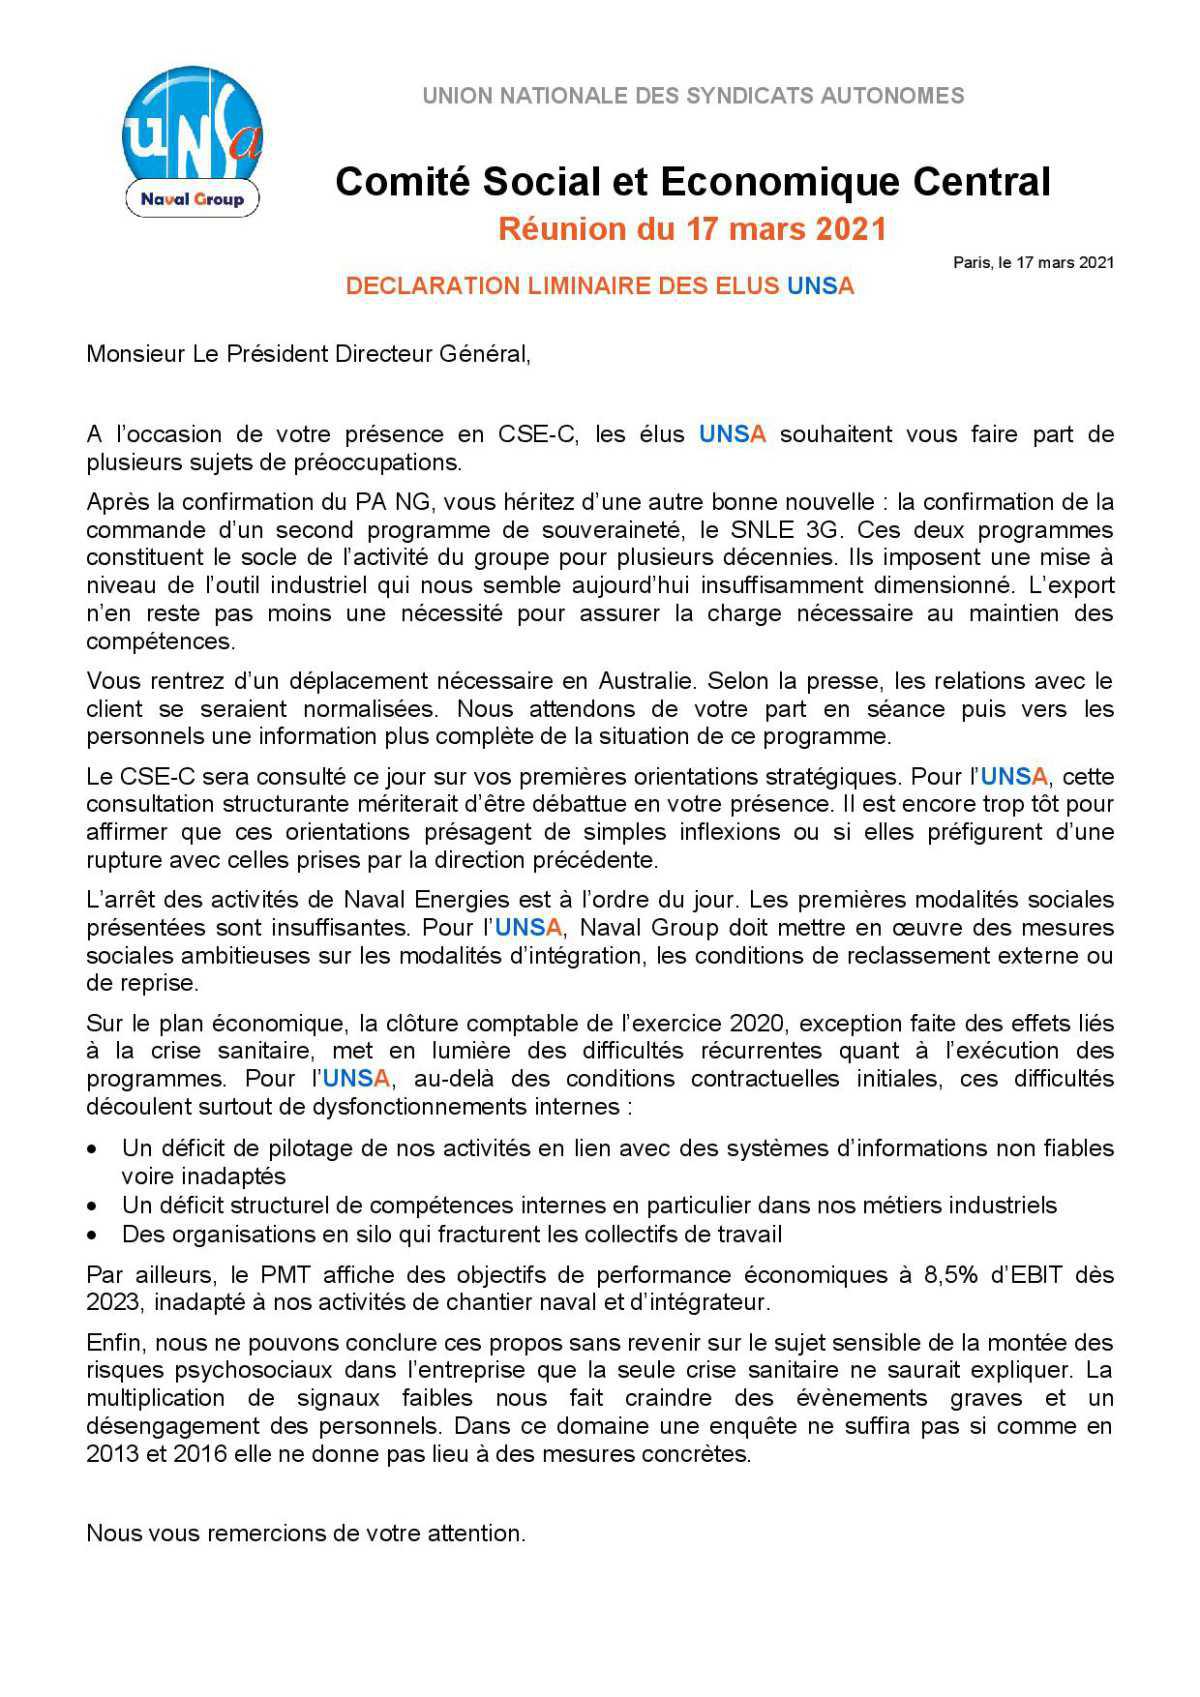 Réunion du 17 mars 2021 - Déclaration liminaire